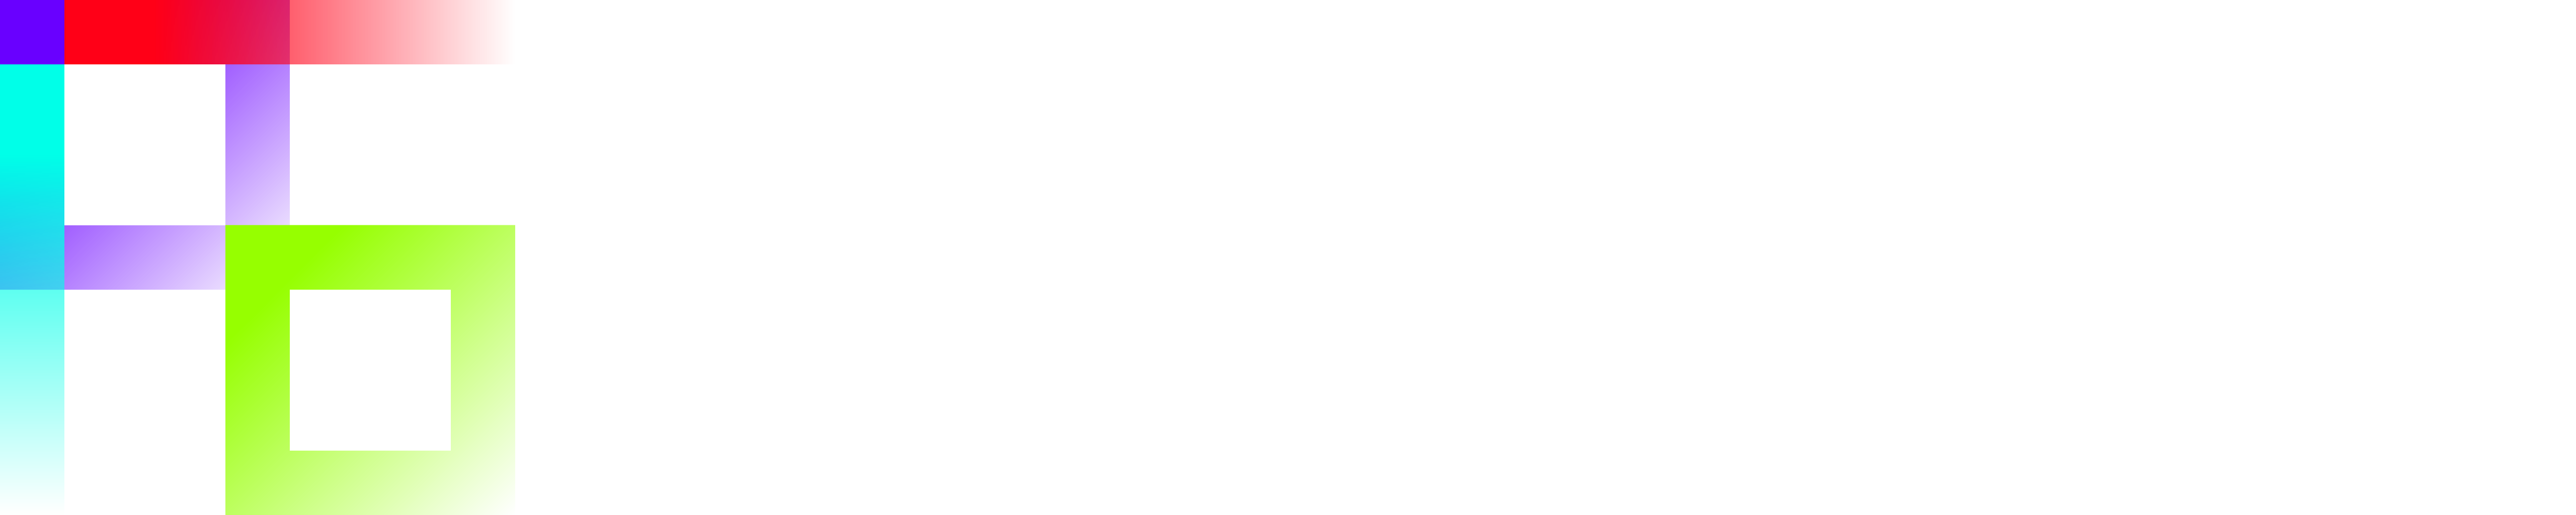 Alexandre Gauvin - Solutions numériques